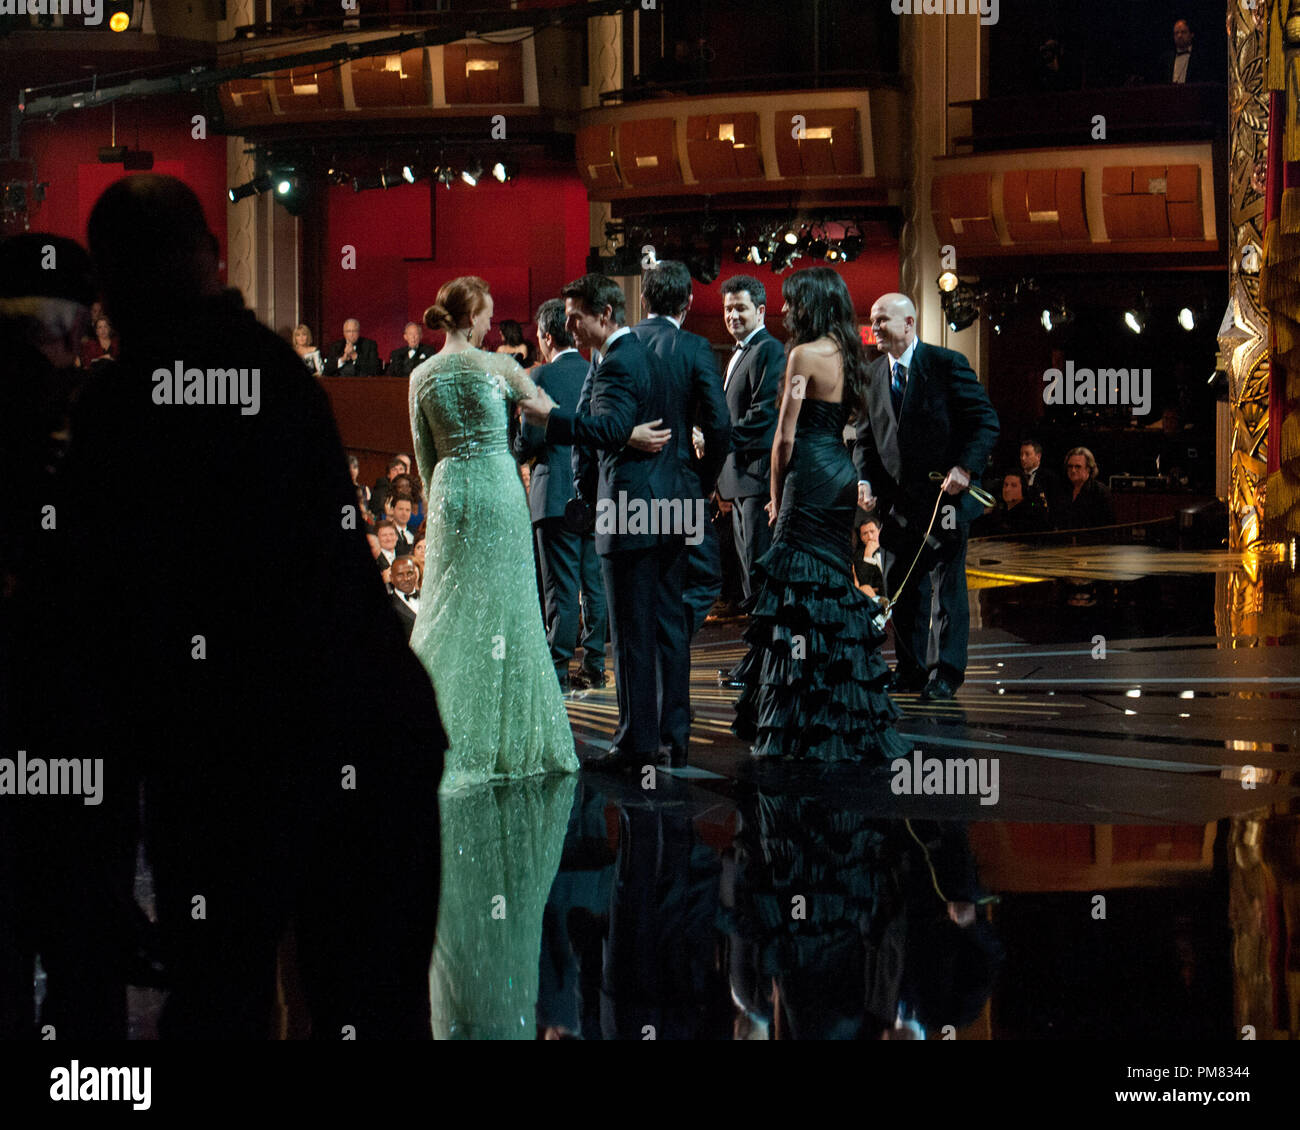 Le cast de 'l'artiste' rassembler sur scène pour accepter l'Oscar du meilleur film de Tom Cruise lors de la diffusion sur le réseau de télévision ABC en direct du 84e congrès annuel de l'Academy Awards de l'Hollywood and Highland Center à Hollywood, CA, Dimanche 26 Février, 2012. Banque D'Images